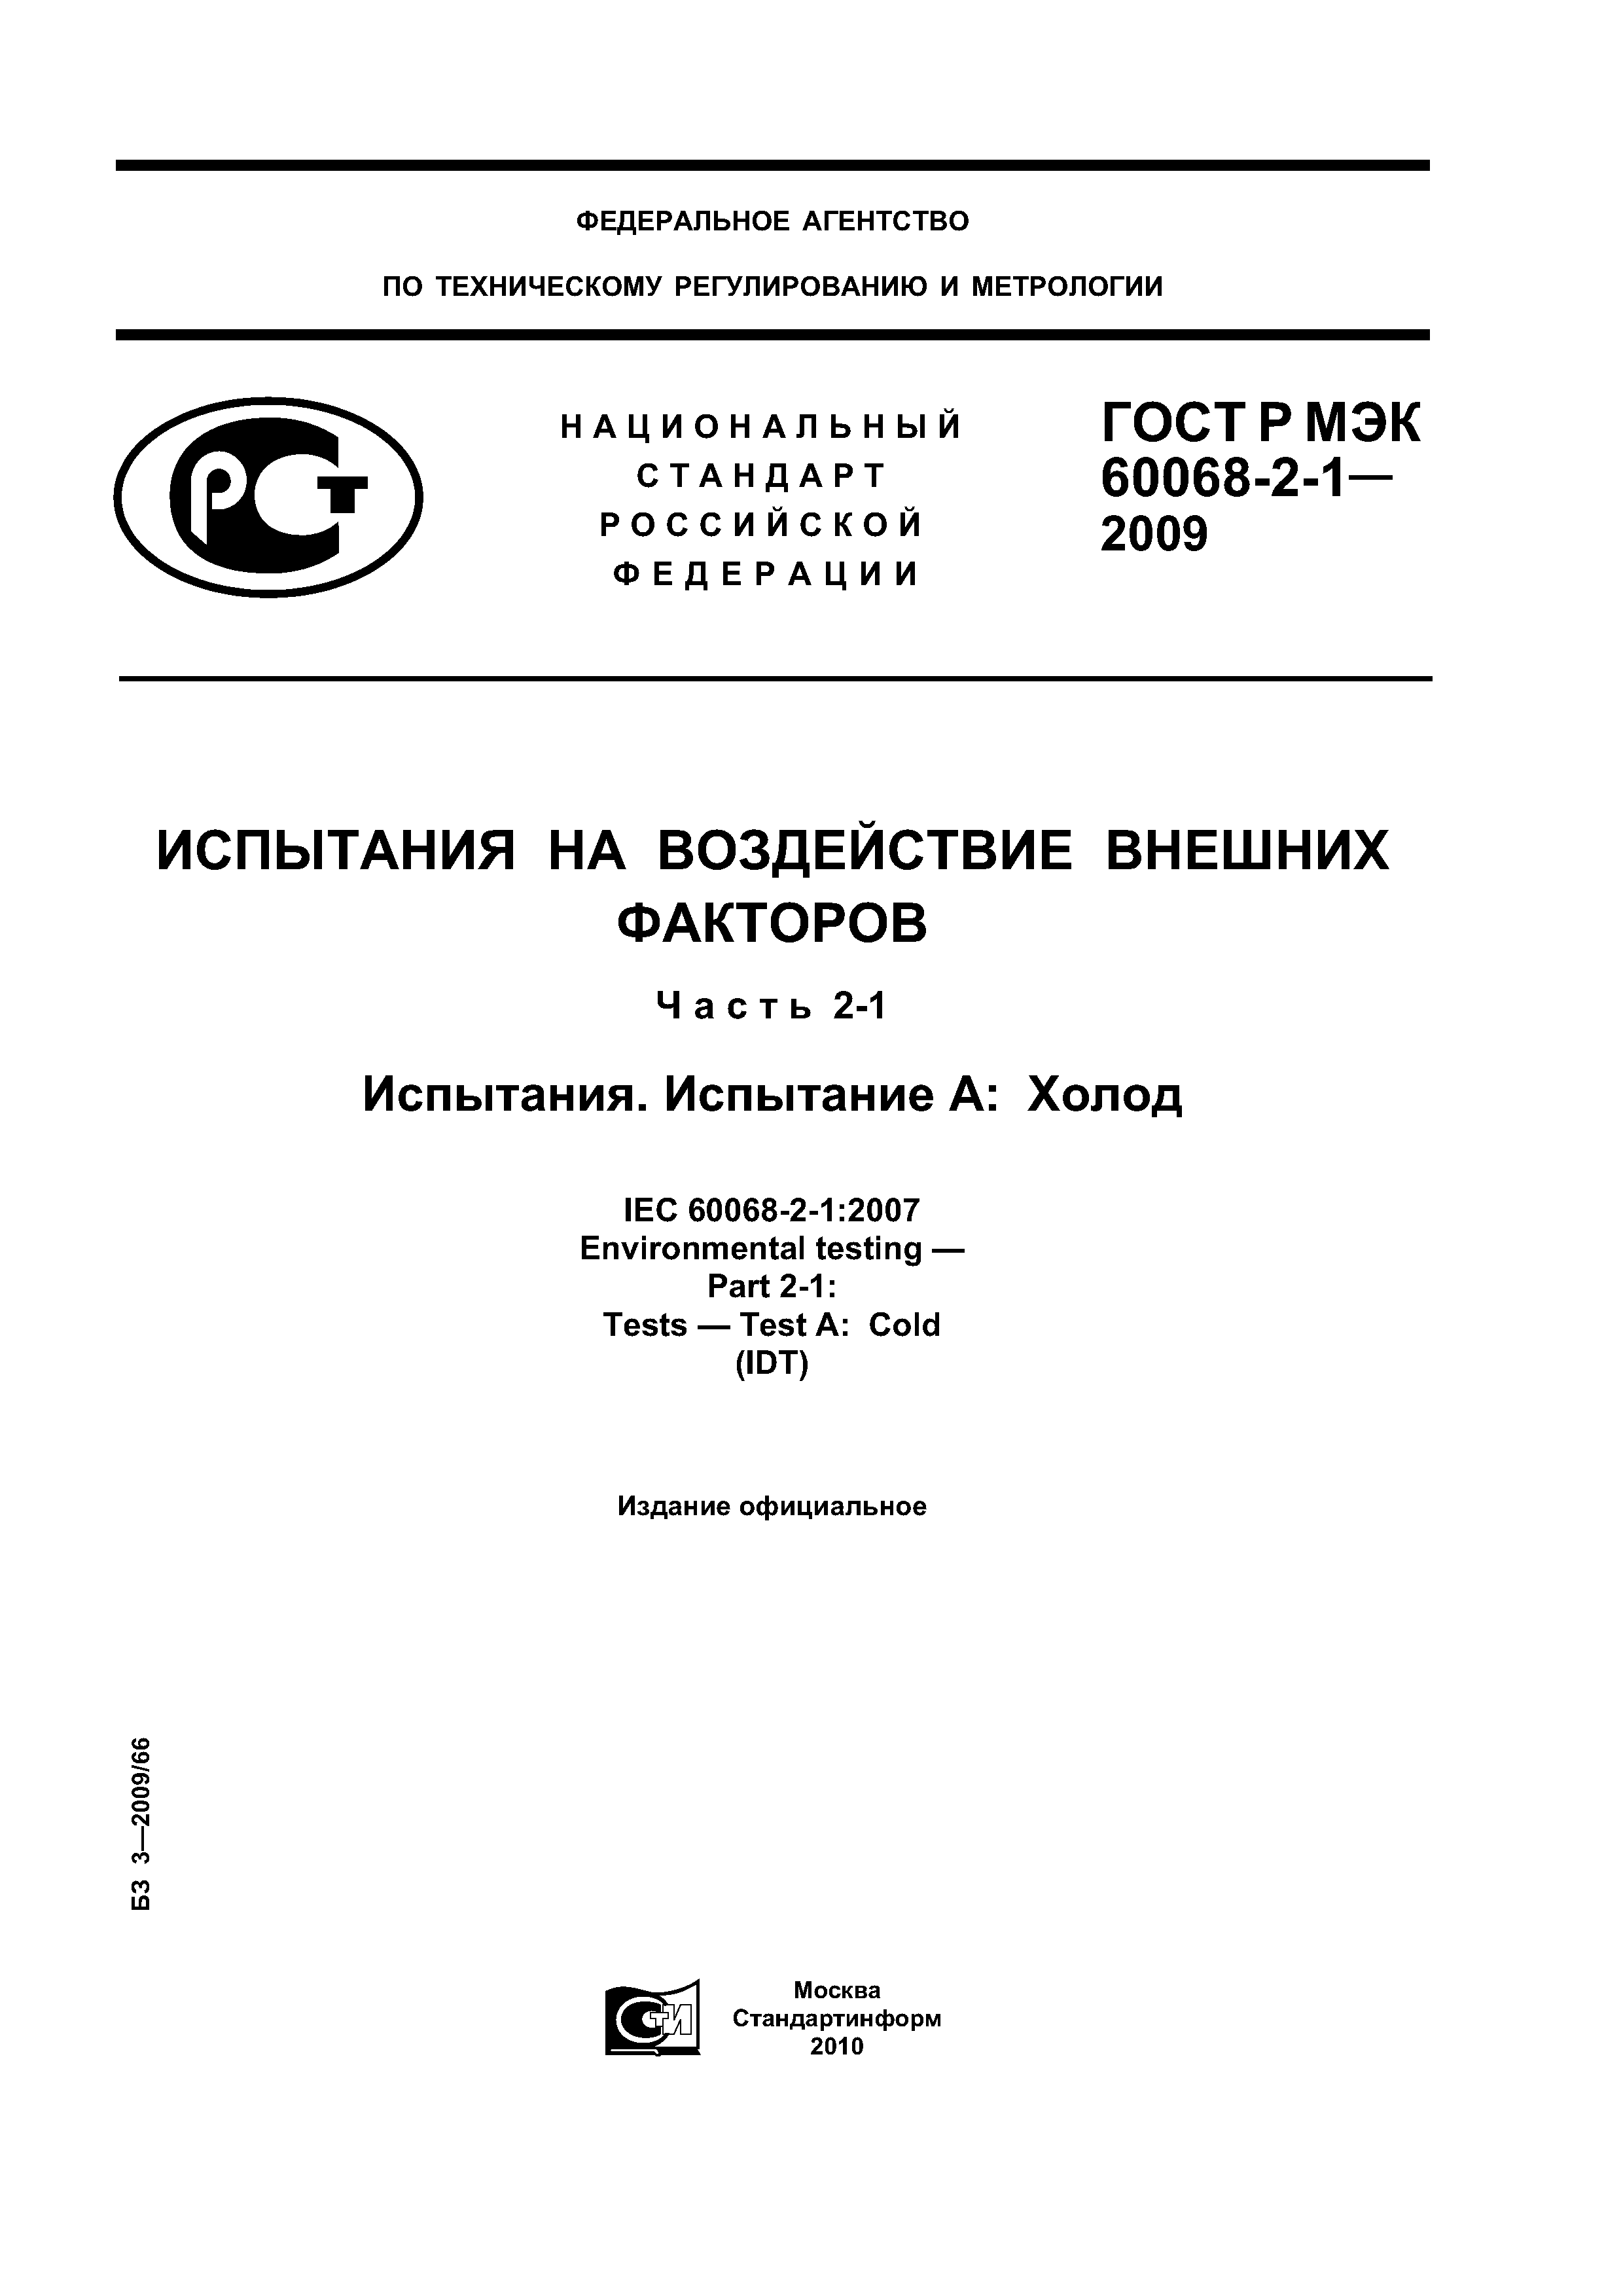 ГОСТ Р МЭК 60068-2-1-2009